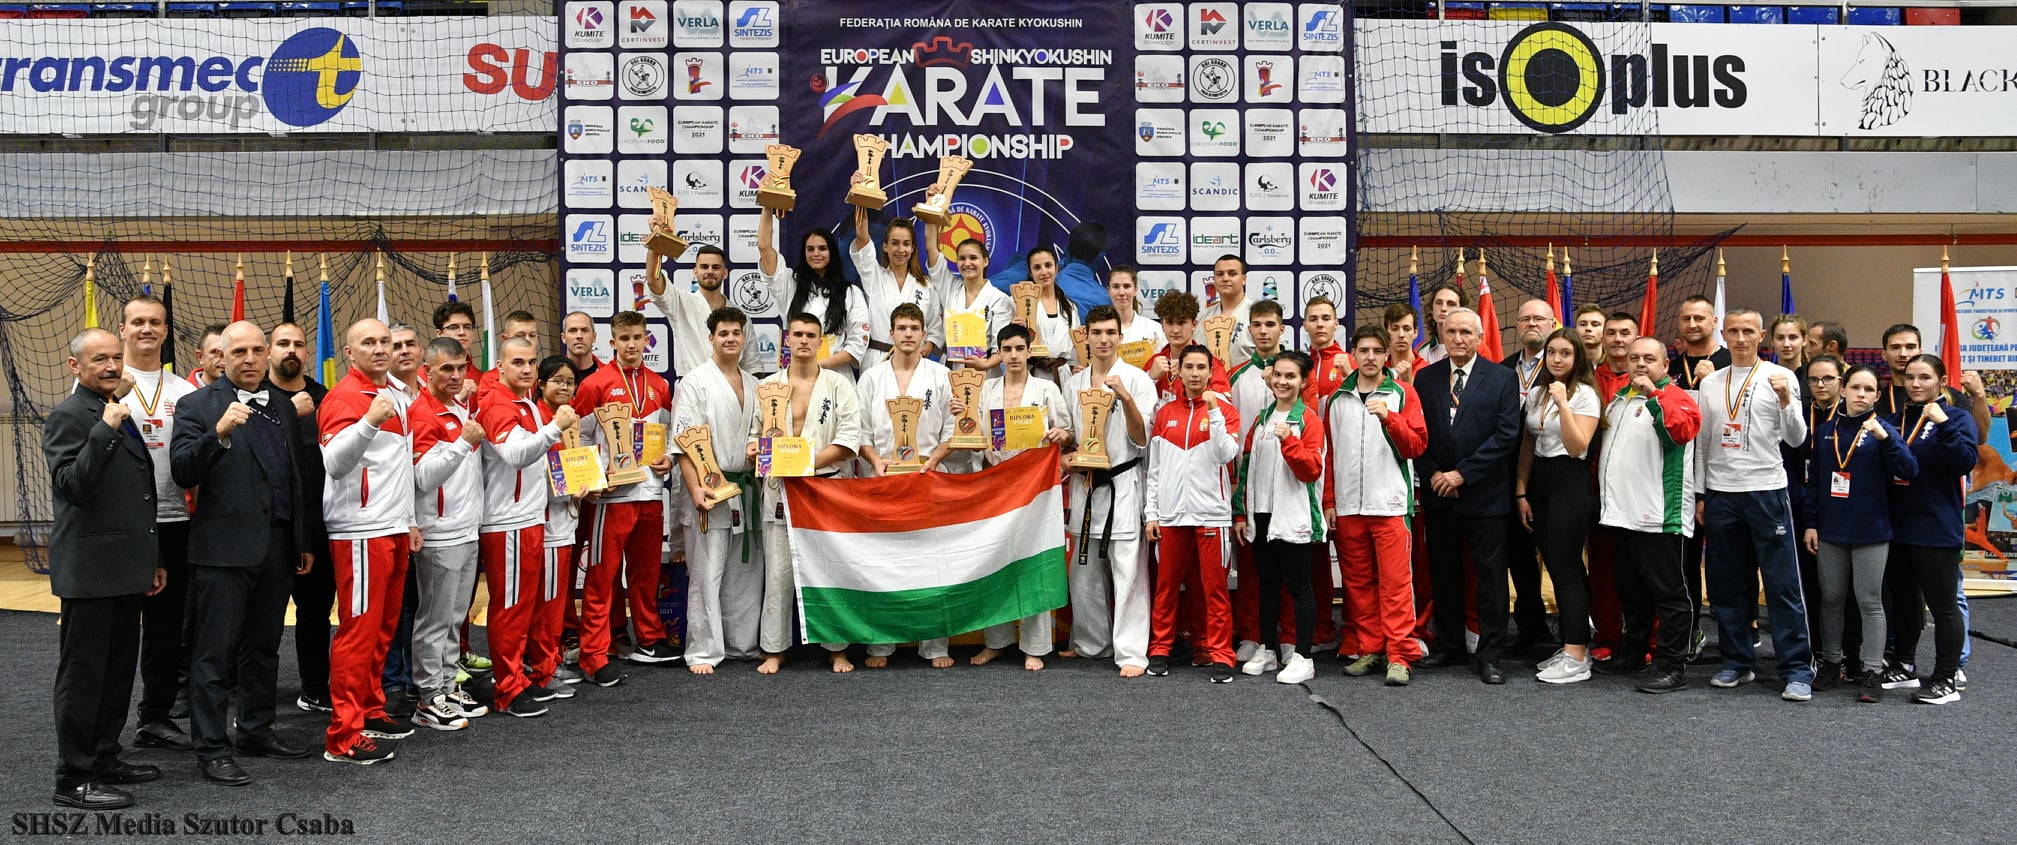 Shinkyokushin Utánpótlás Európa bajnokság Romániában